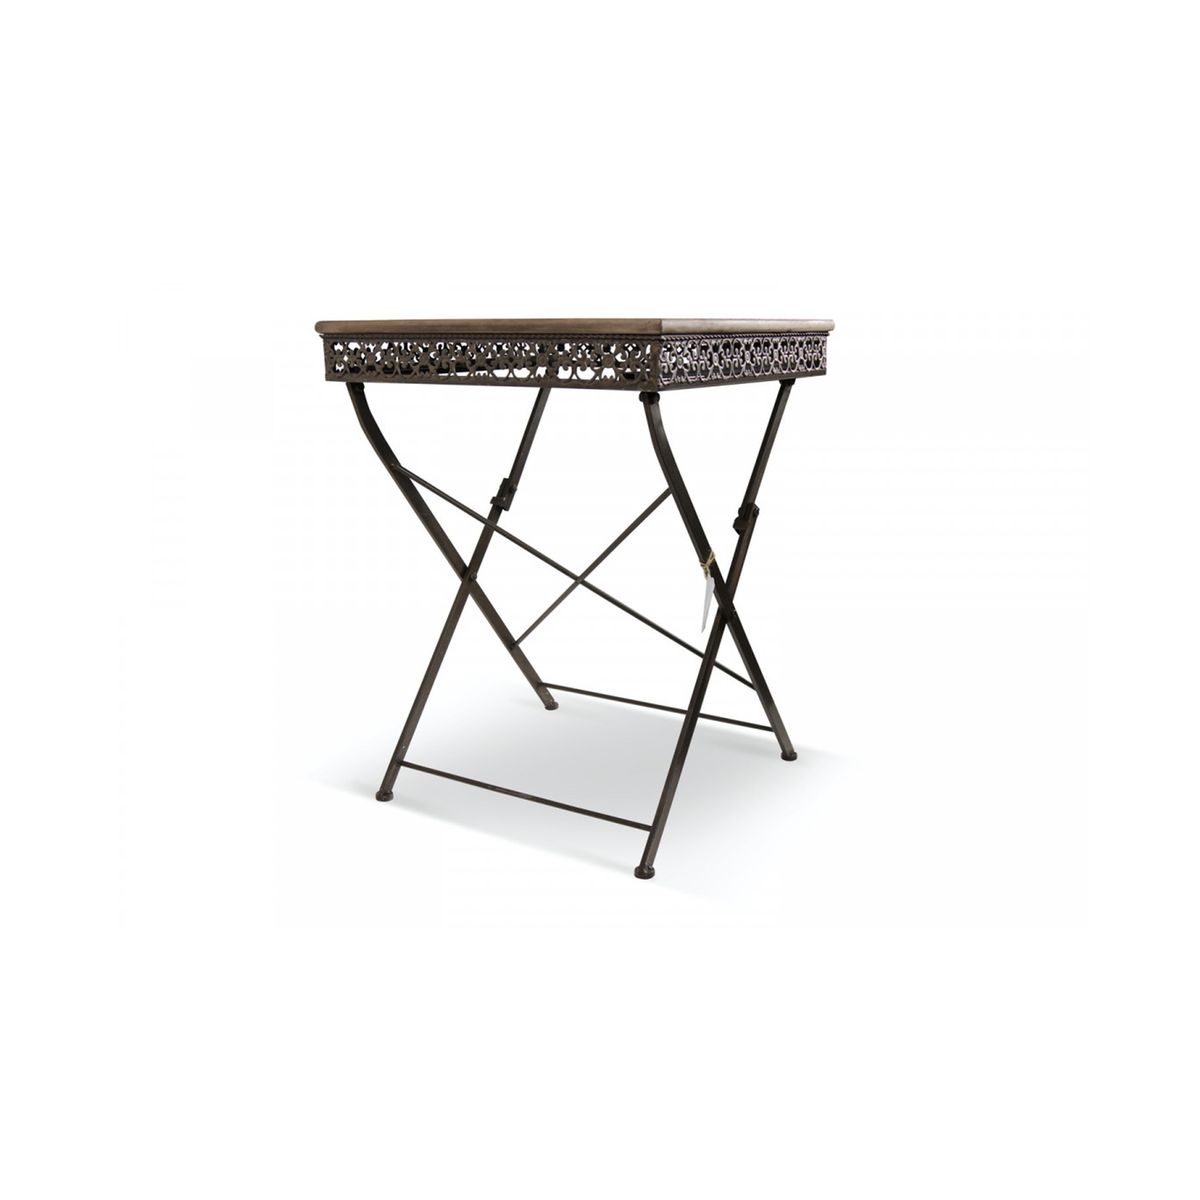 Table d'appoint pliante bois et métal noir - 60x60x76cm Couleur